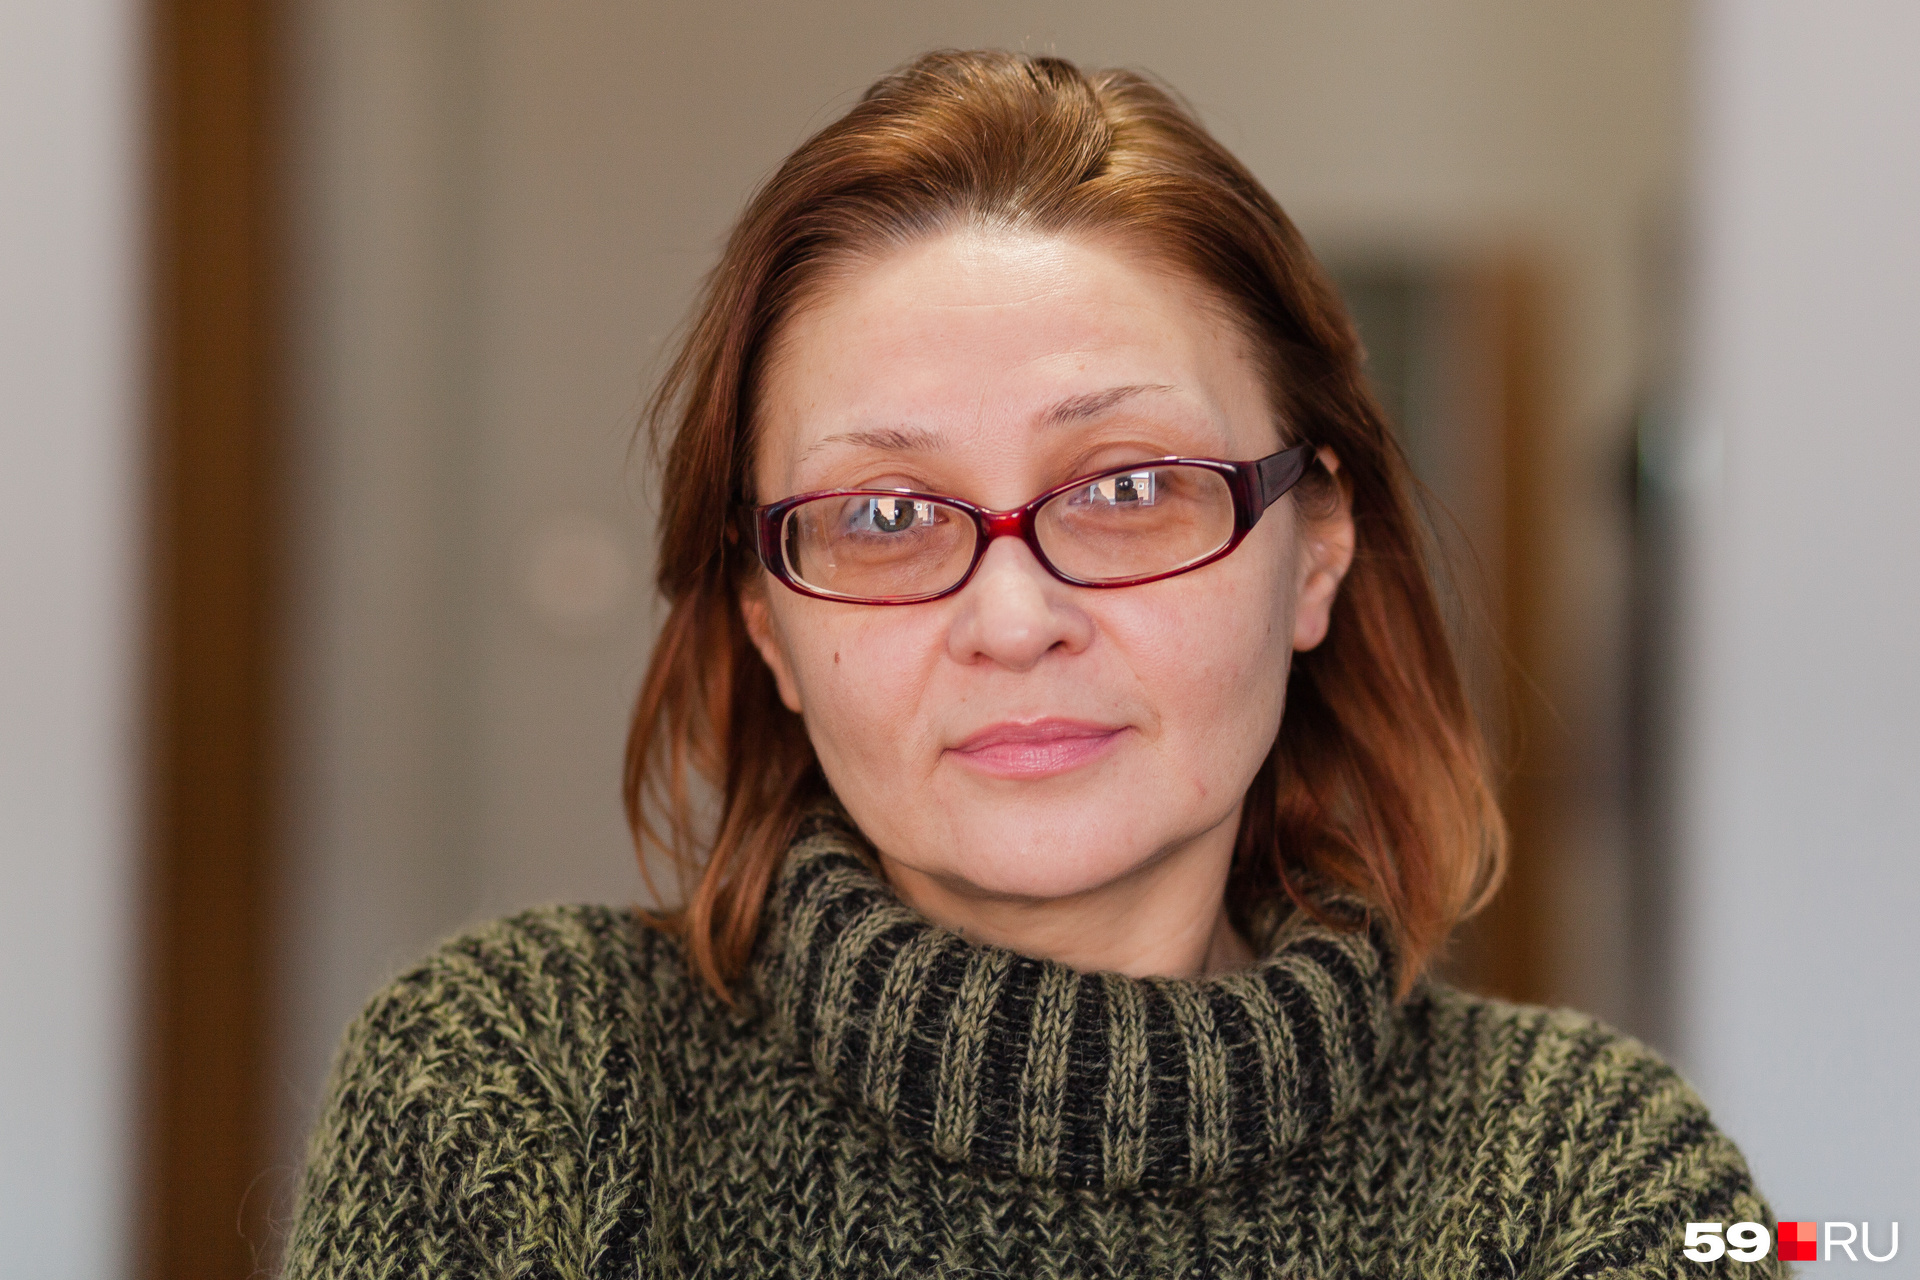 Администратор кризисной квартиры Оксана Огородова: «Очень важно помочь в первое время после освобождения. Для сидевших точка невозврата может случиться в любой момент»